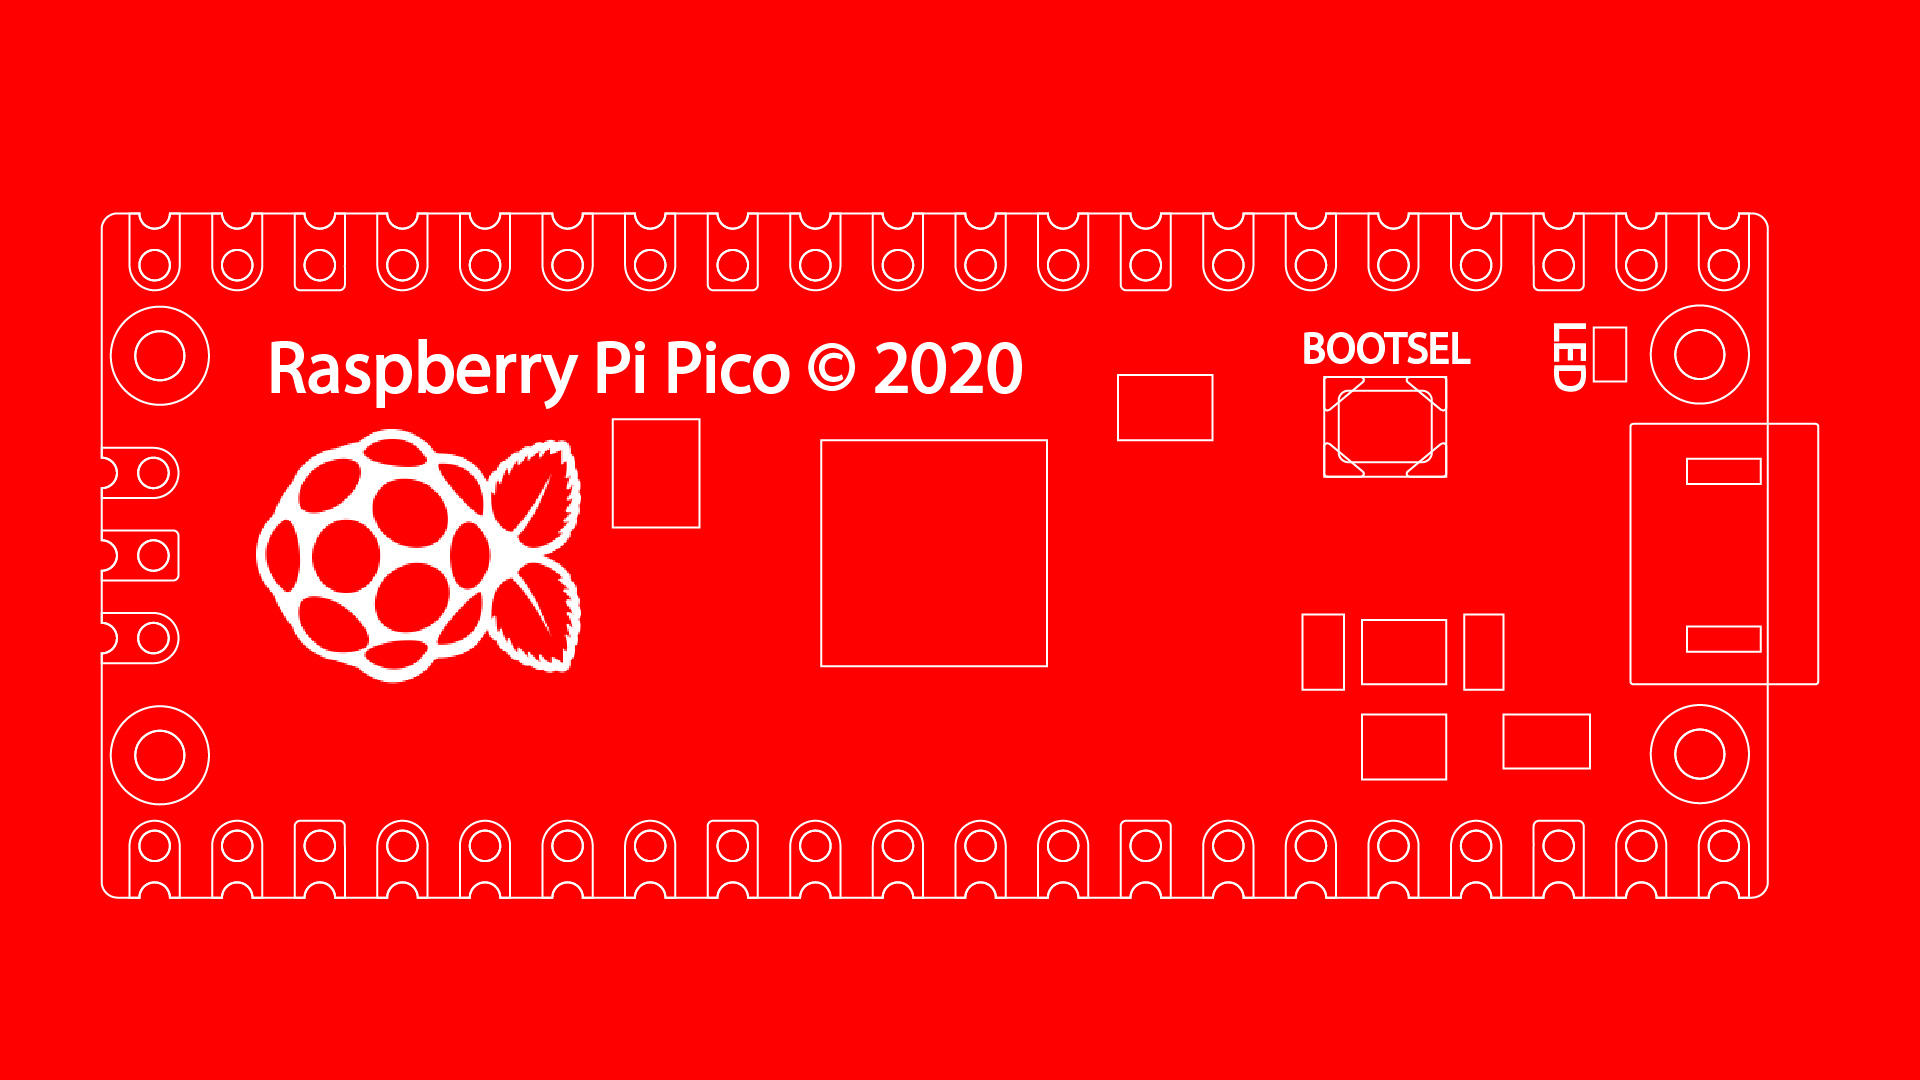 An outline of a Raspberry Pi Pico